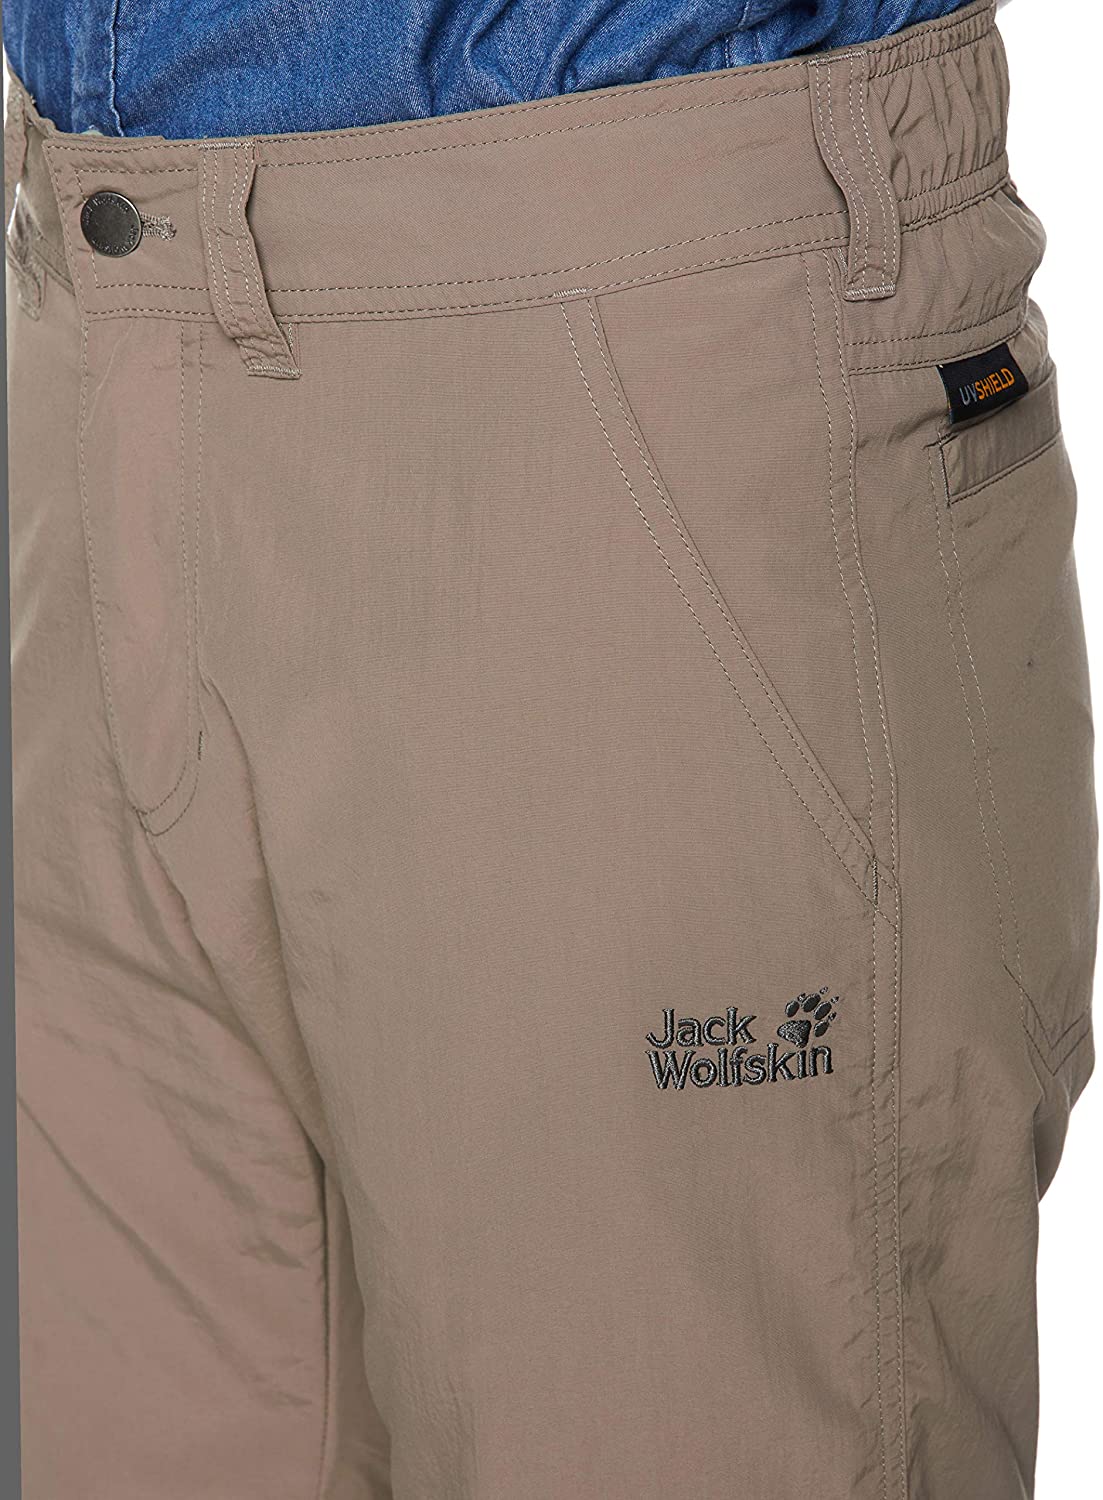 Jack Wolfskin 5116050- Canyon Zip off Pants, Pantaloni Uomo size 34-32